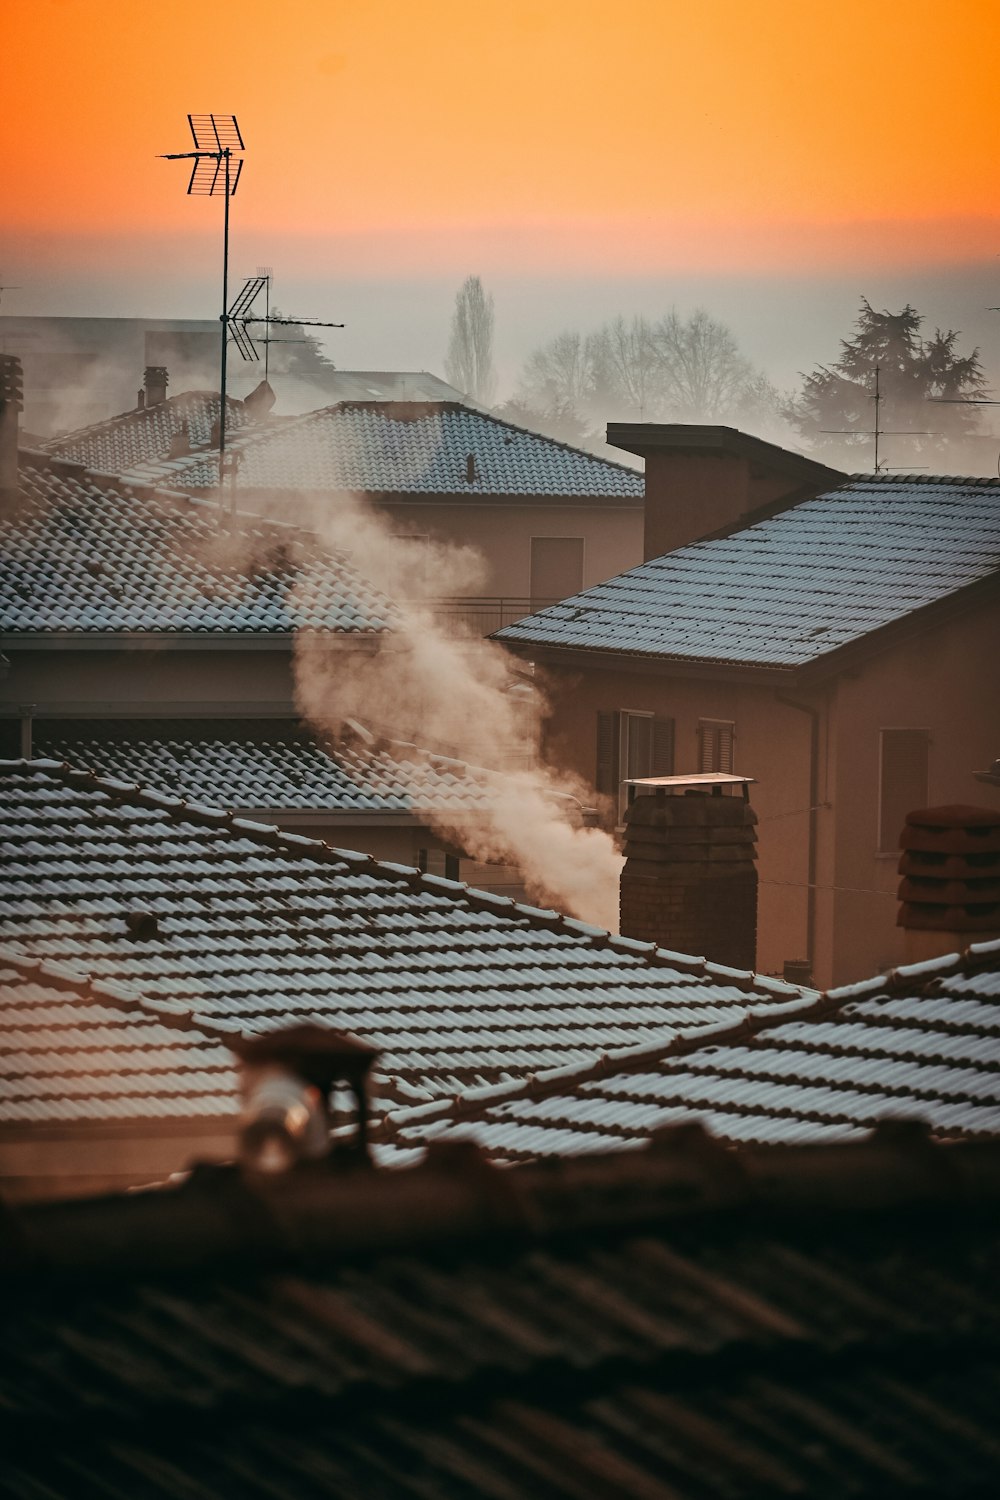 fumaça saindo de uma chaminé em cima de um telhado